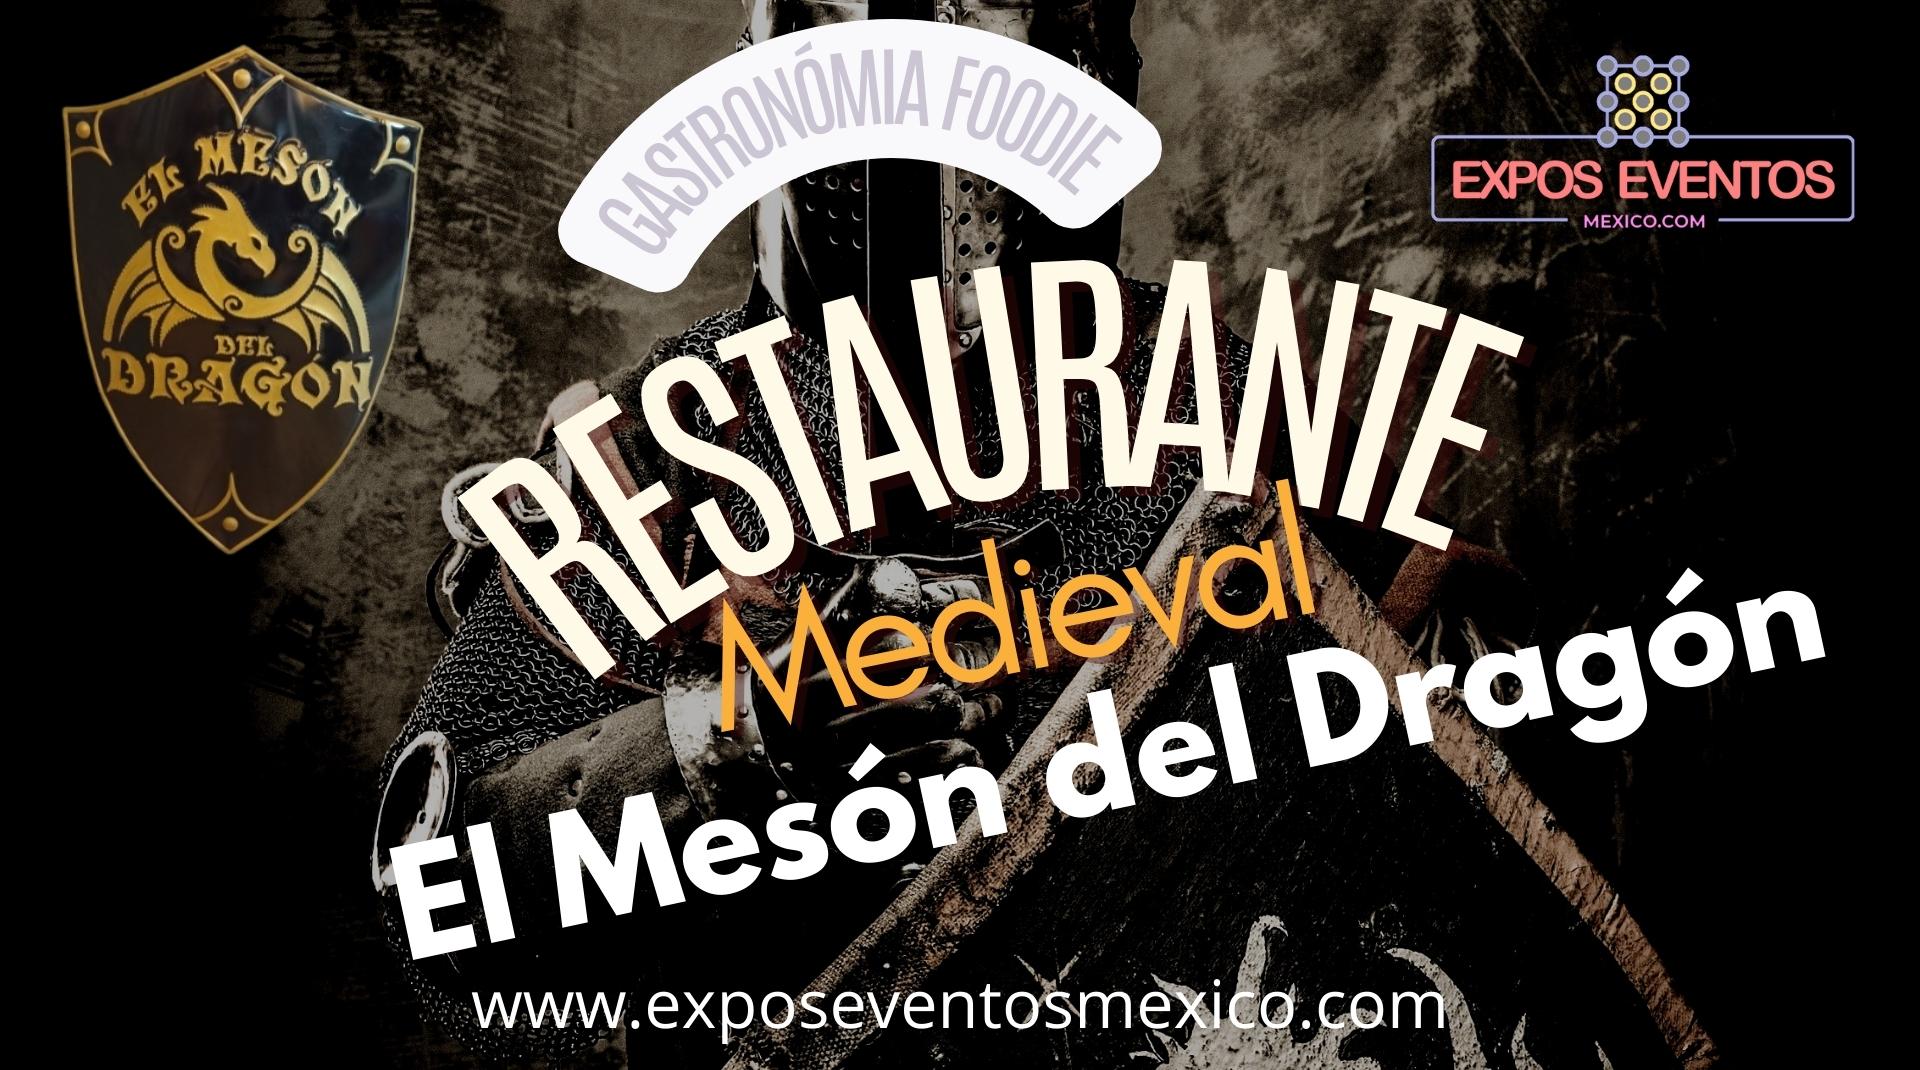 Restaurante Medieval CDMX Restaurante el Mesón del Dragón Cocina Medieval de Autor  Restaurante Tematico